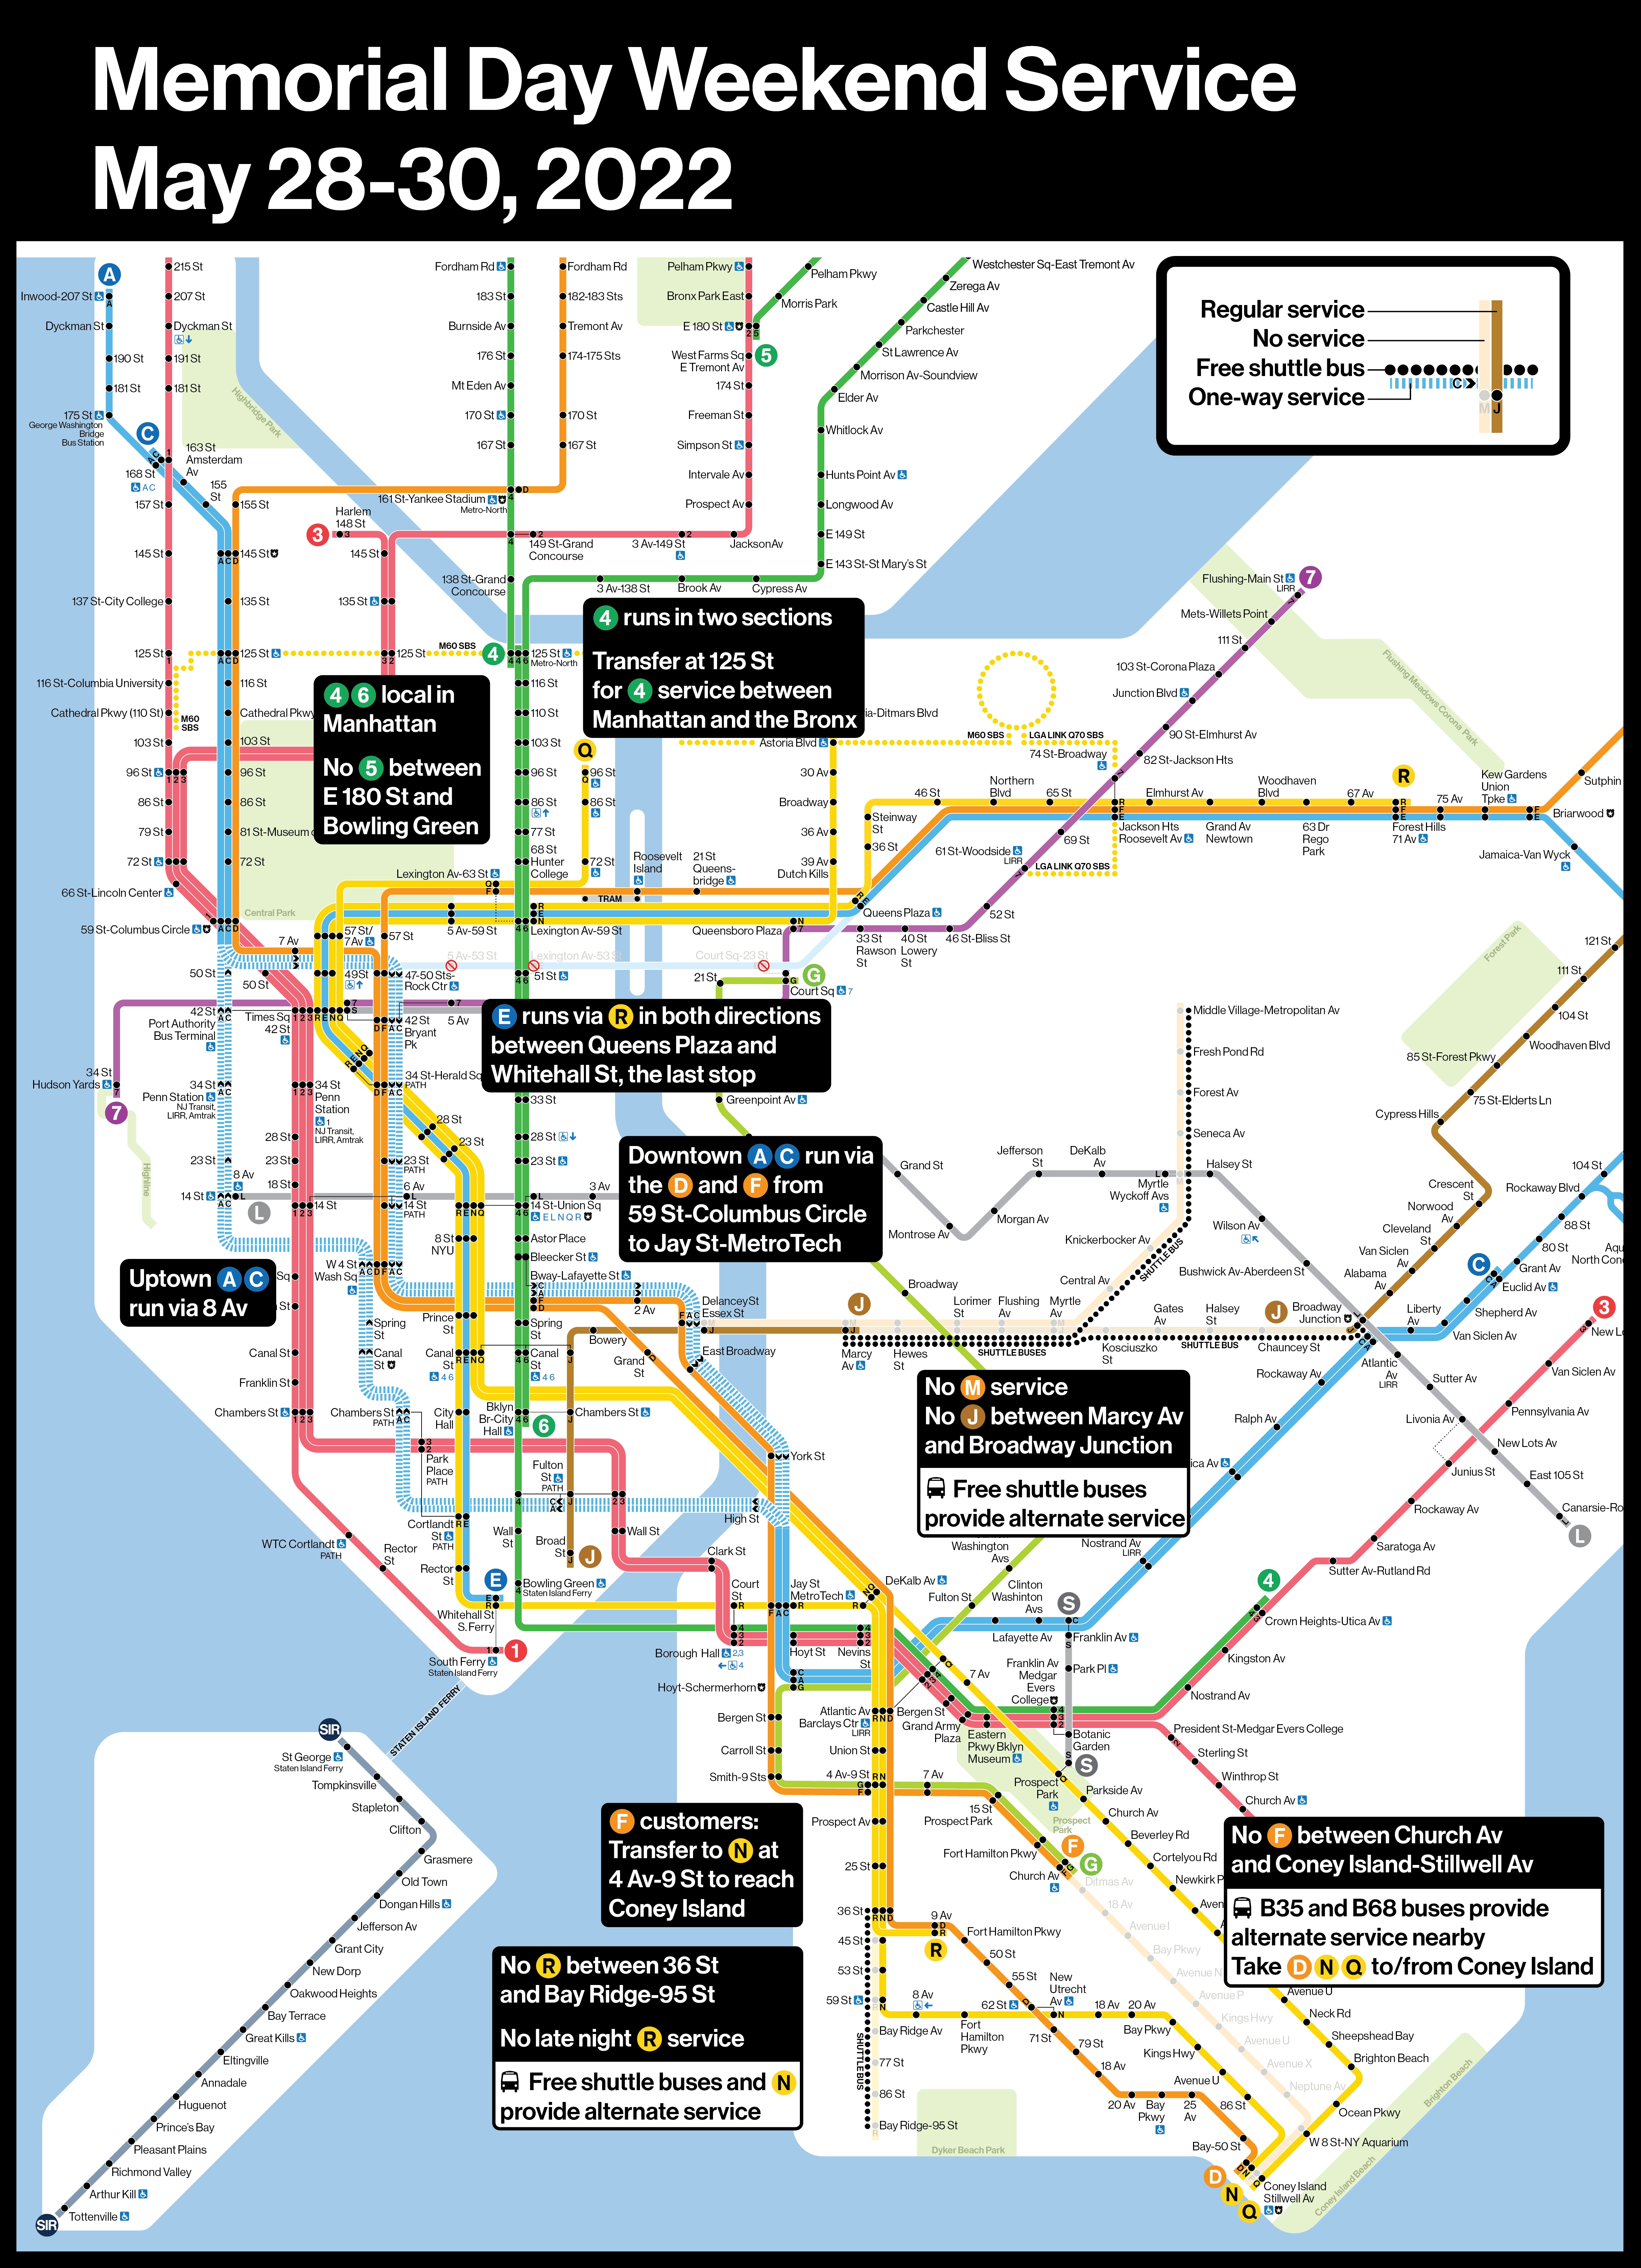 MTA Announces Memorial Day Weekend Service Plan